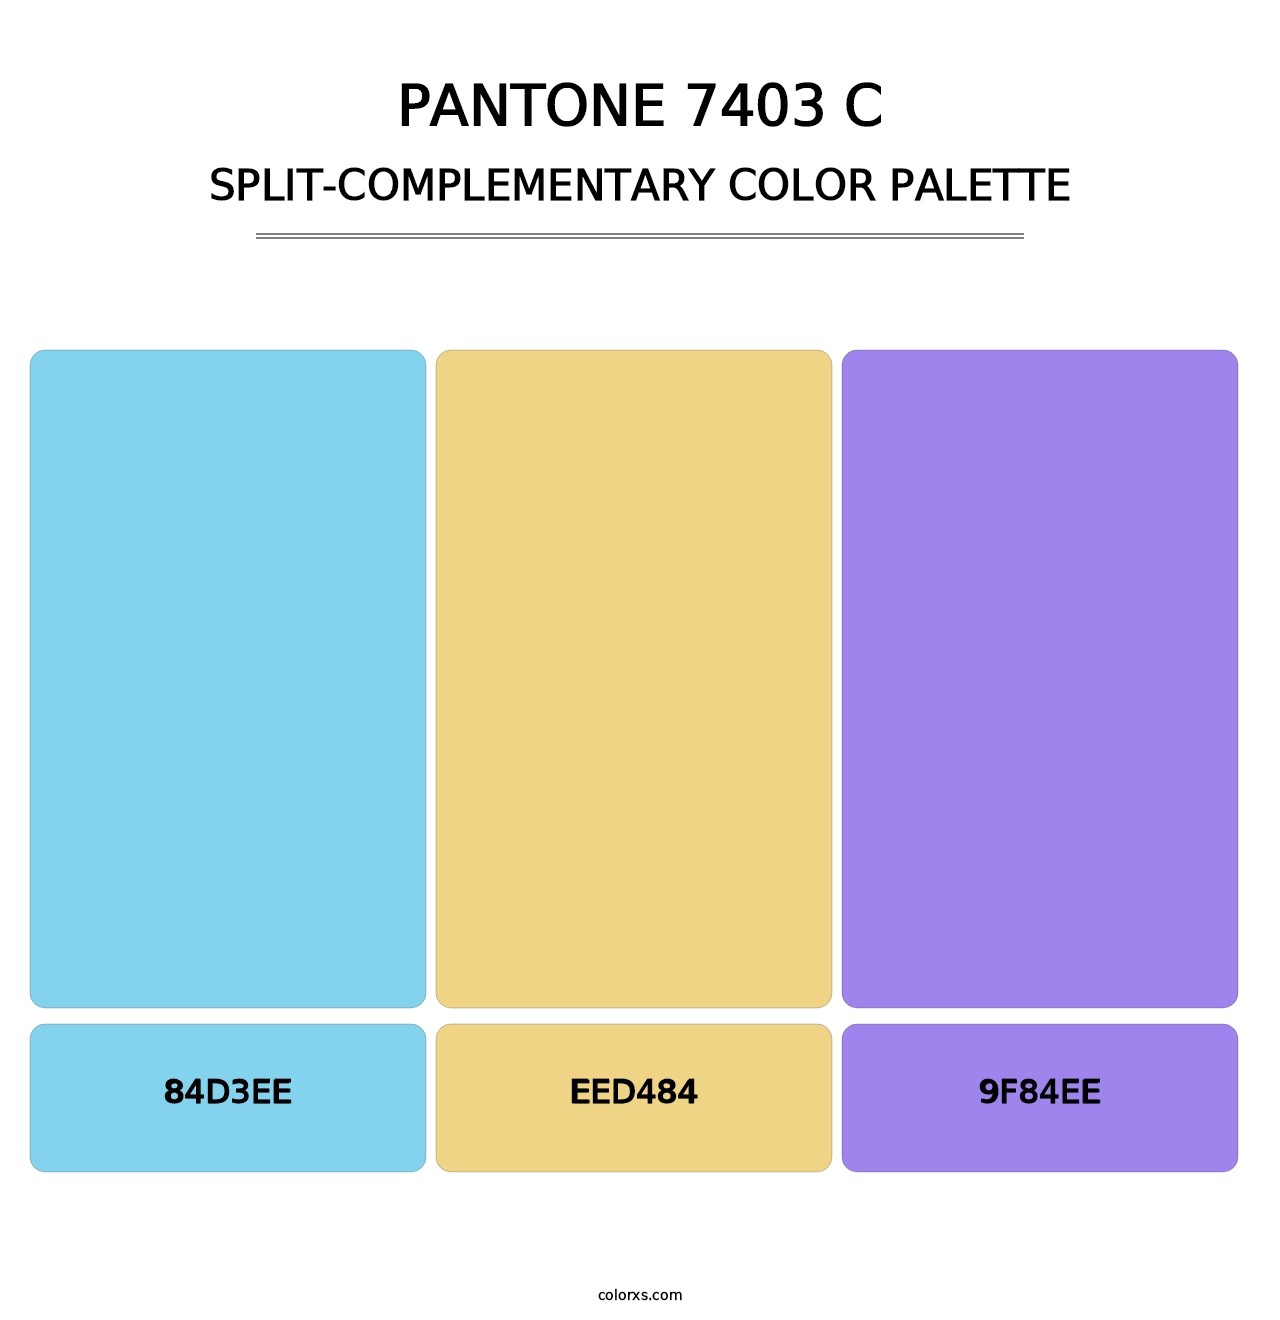 PANTONE 7403 C - Split-Complementary Color Palette